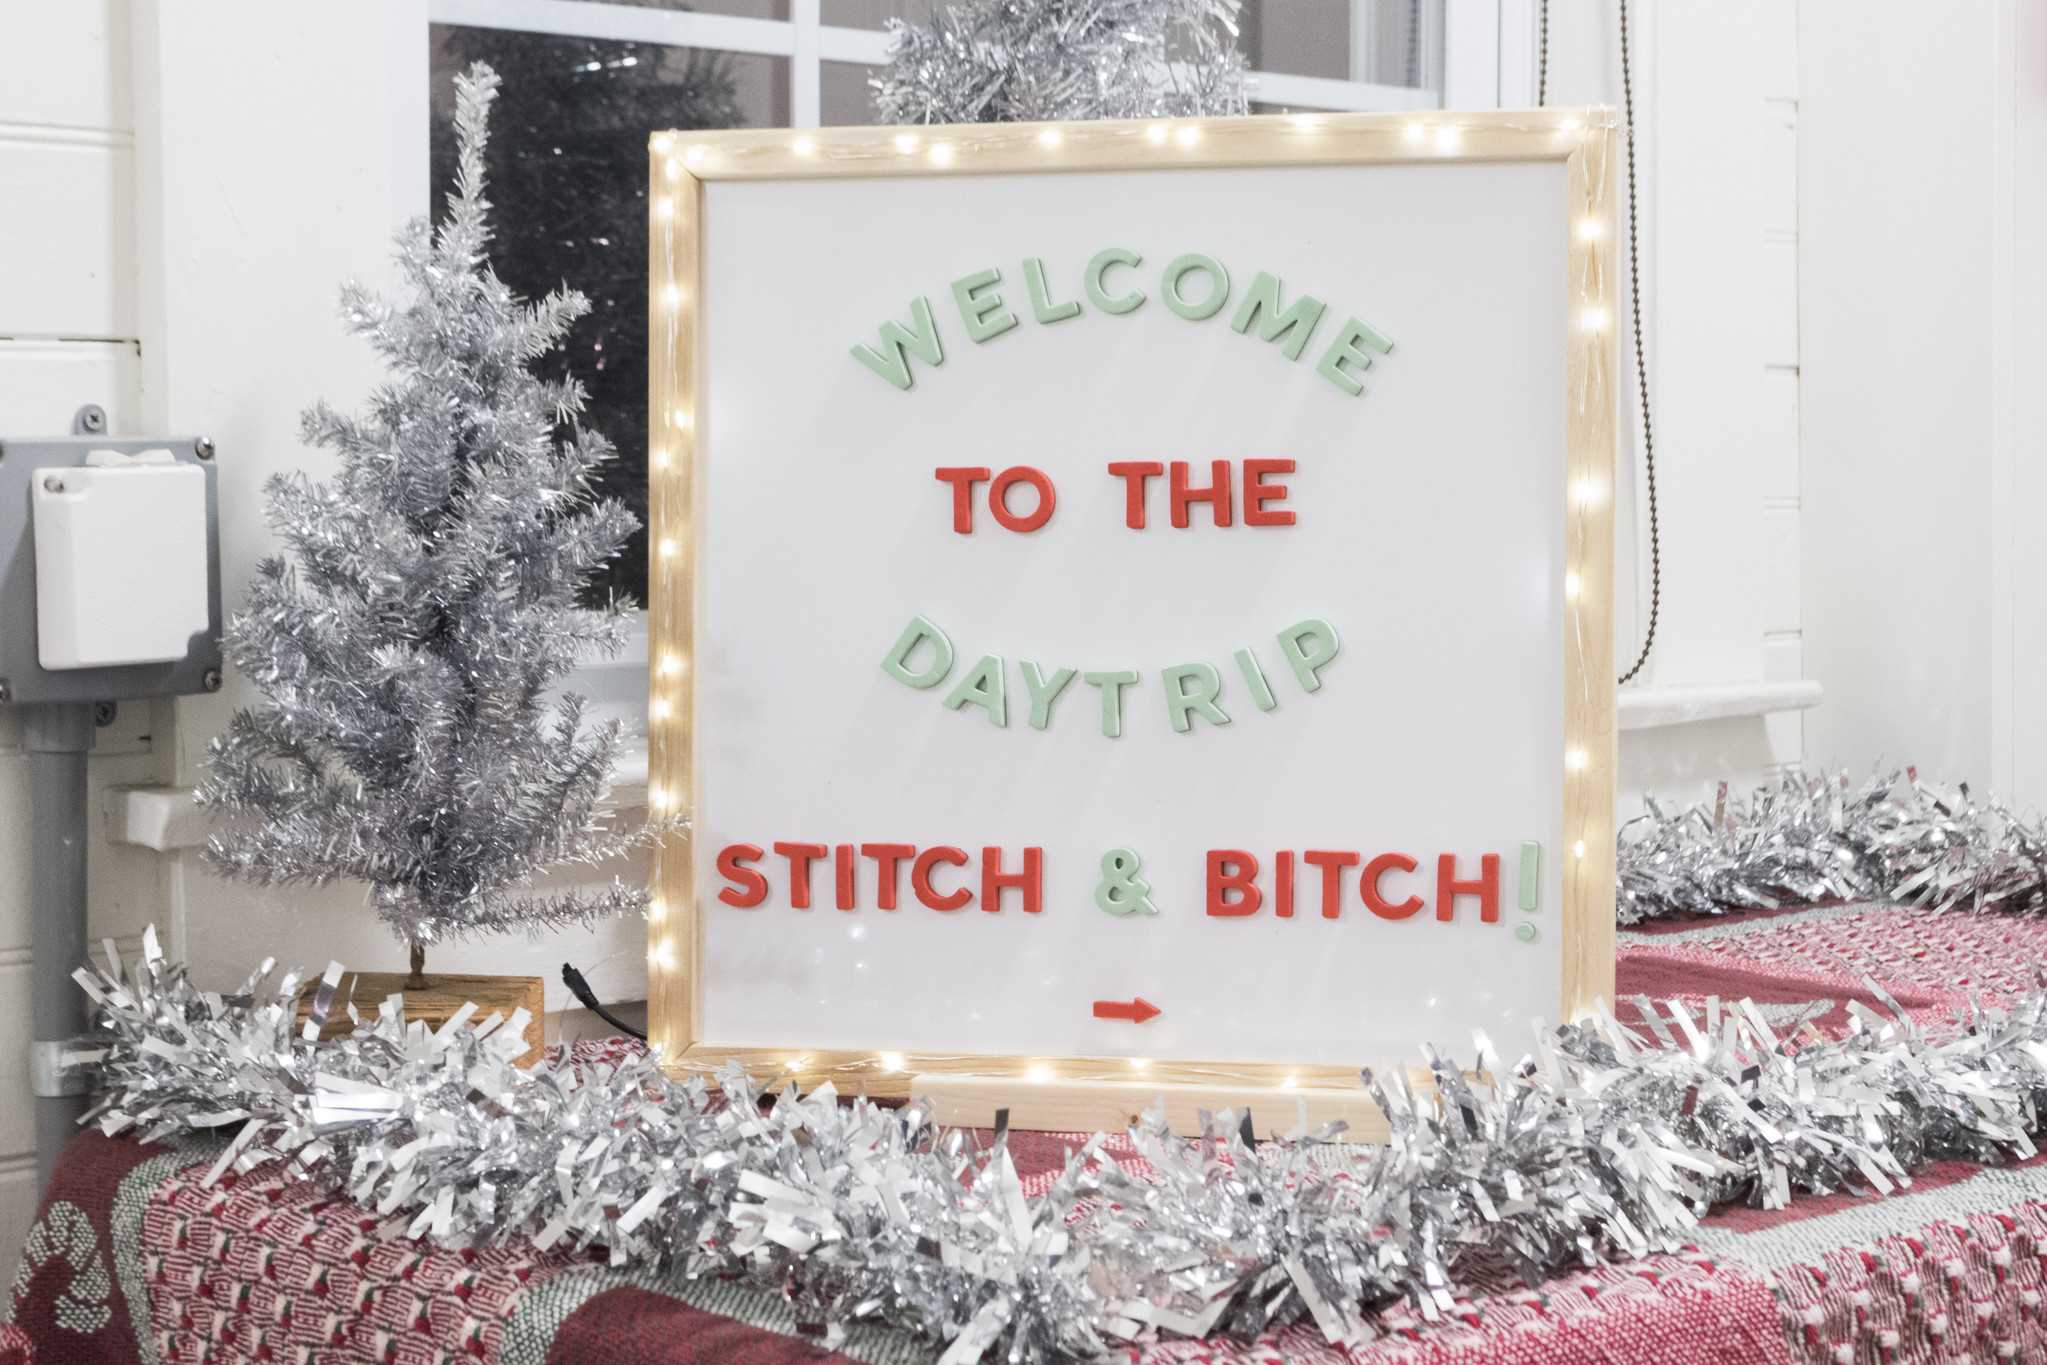 Daytrip Society Annual Stitch & Bitch - Macrame Dream Catchers!